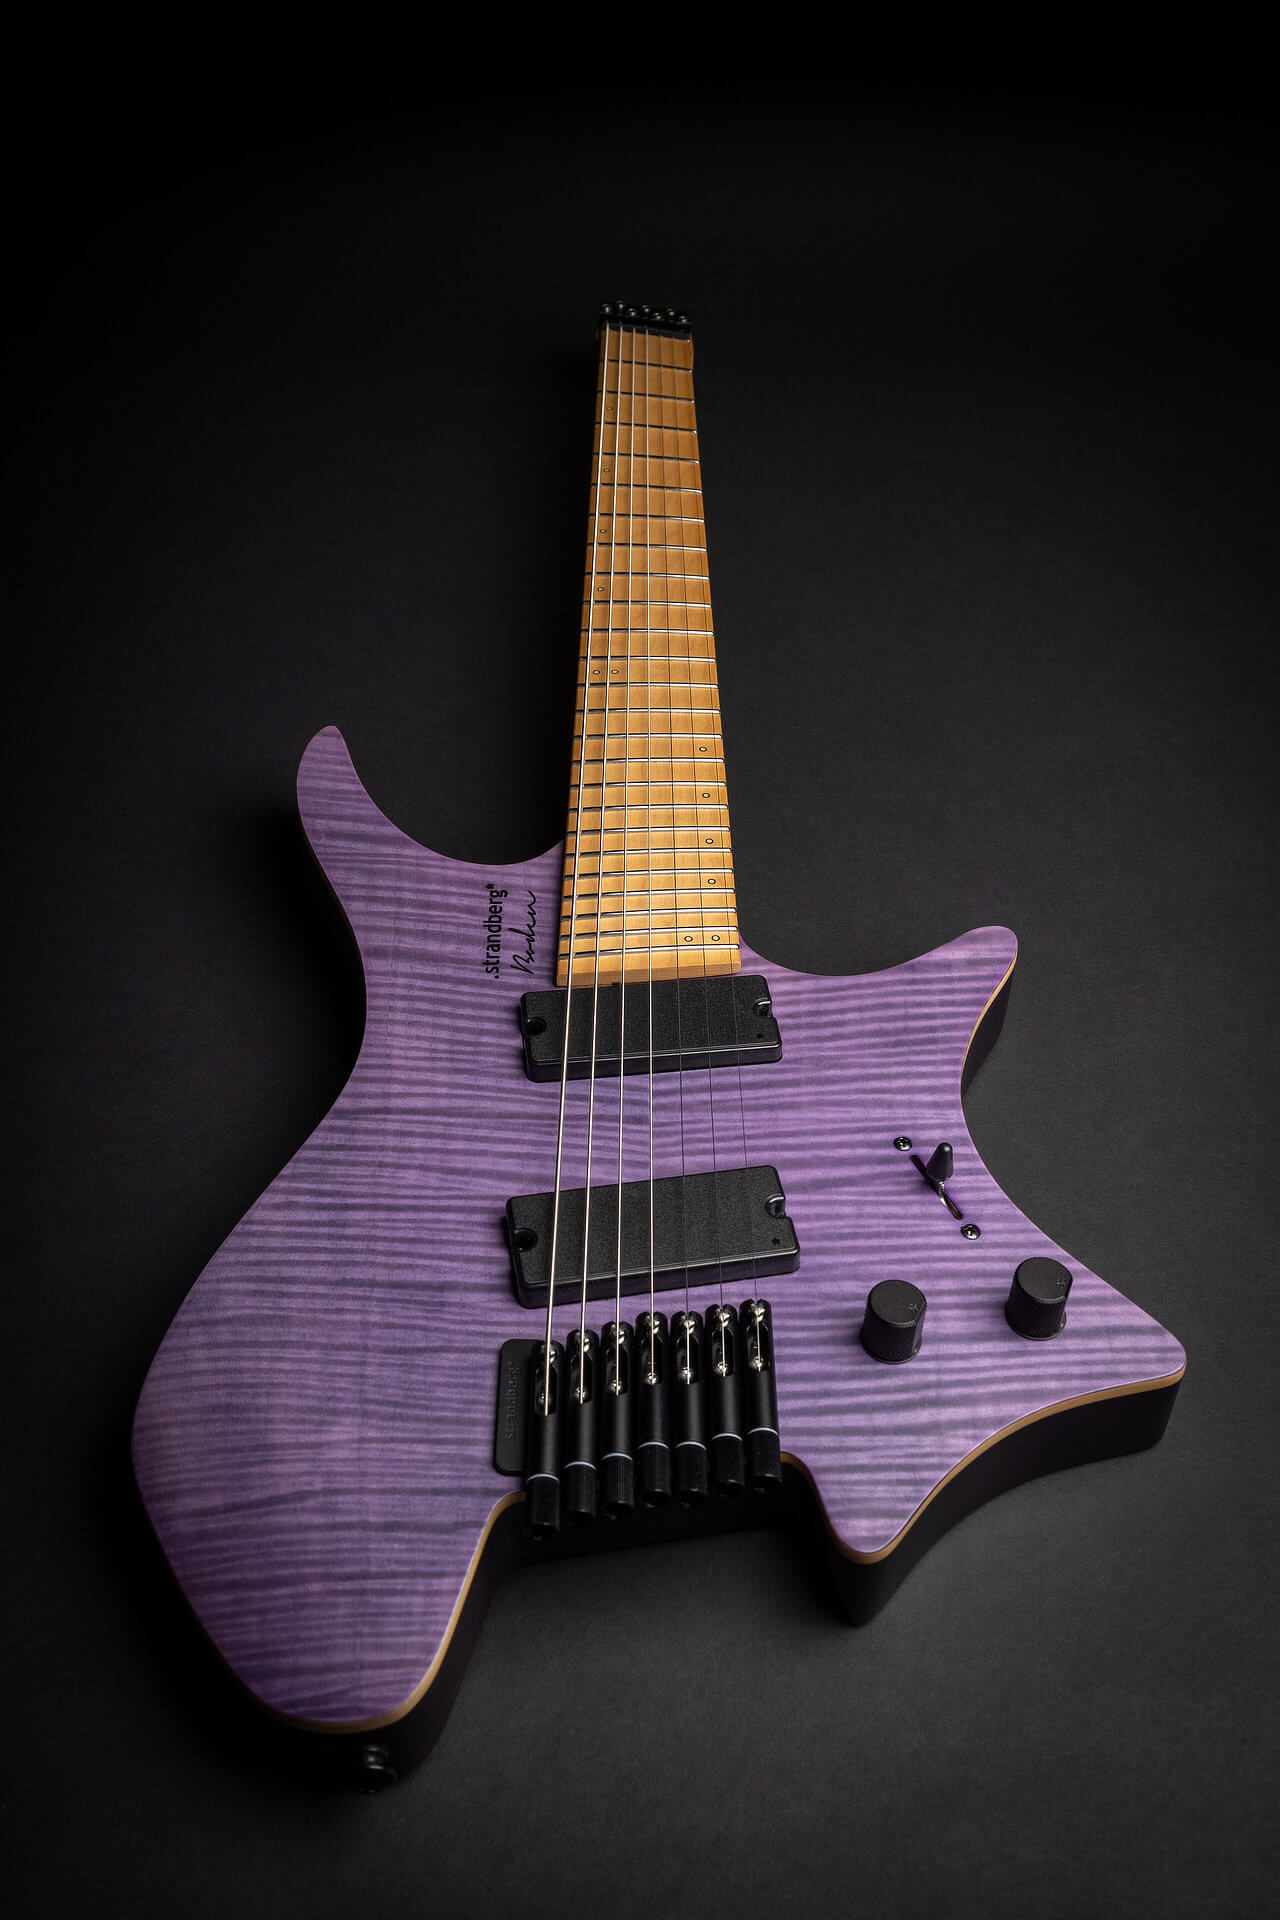 Boden Standard NX 7 Purple